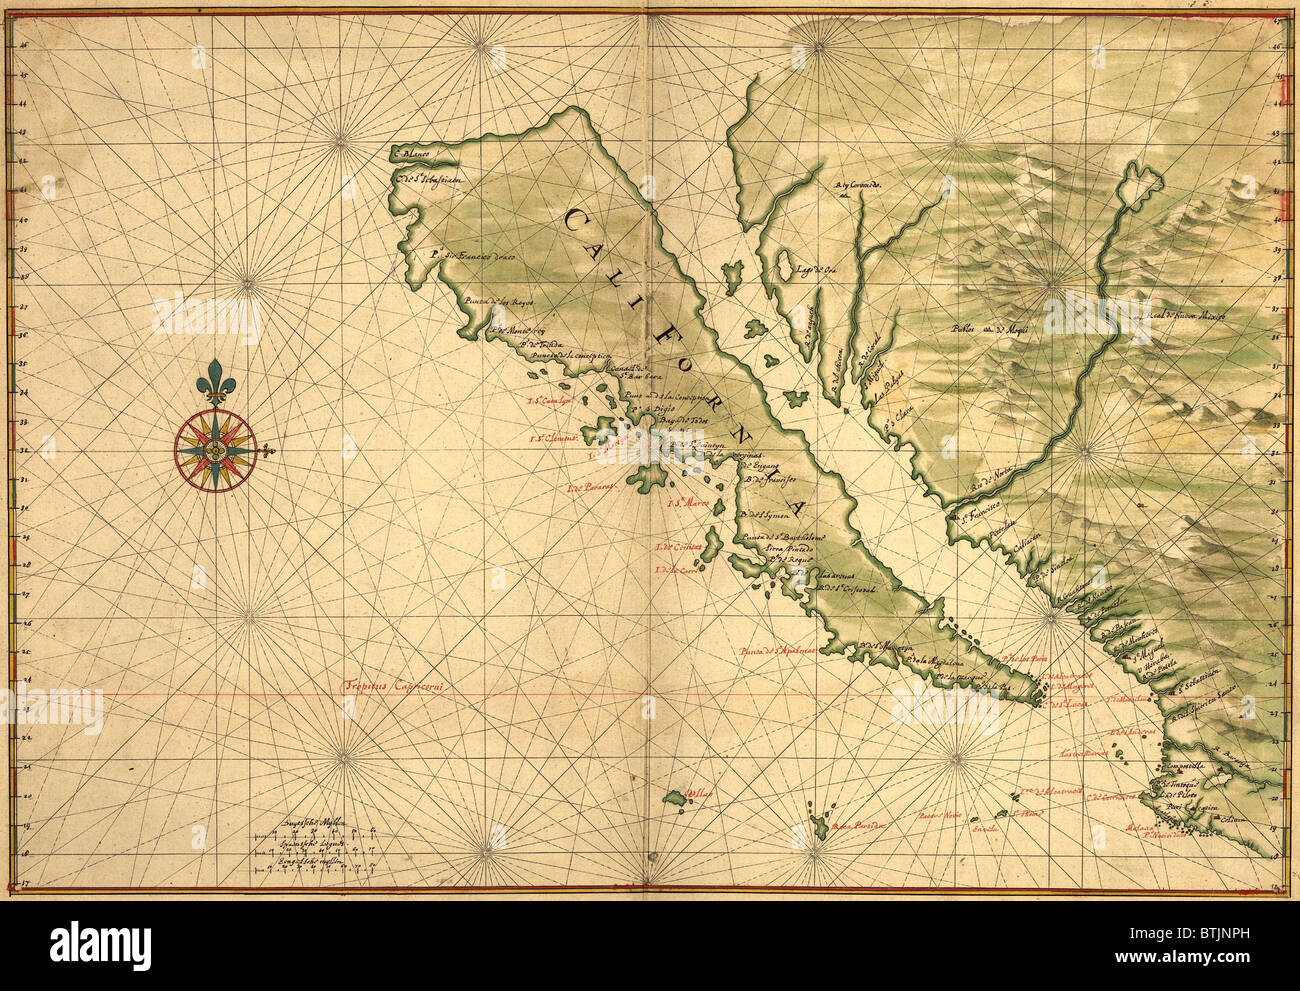 1650 El mapa de Baja California y el noroeste de México, mostrando como una isla de California Foto de stock